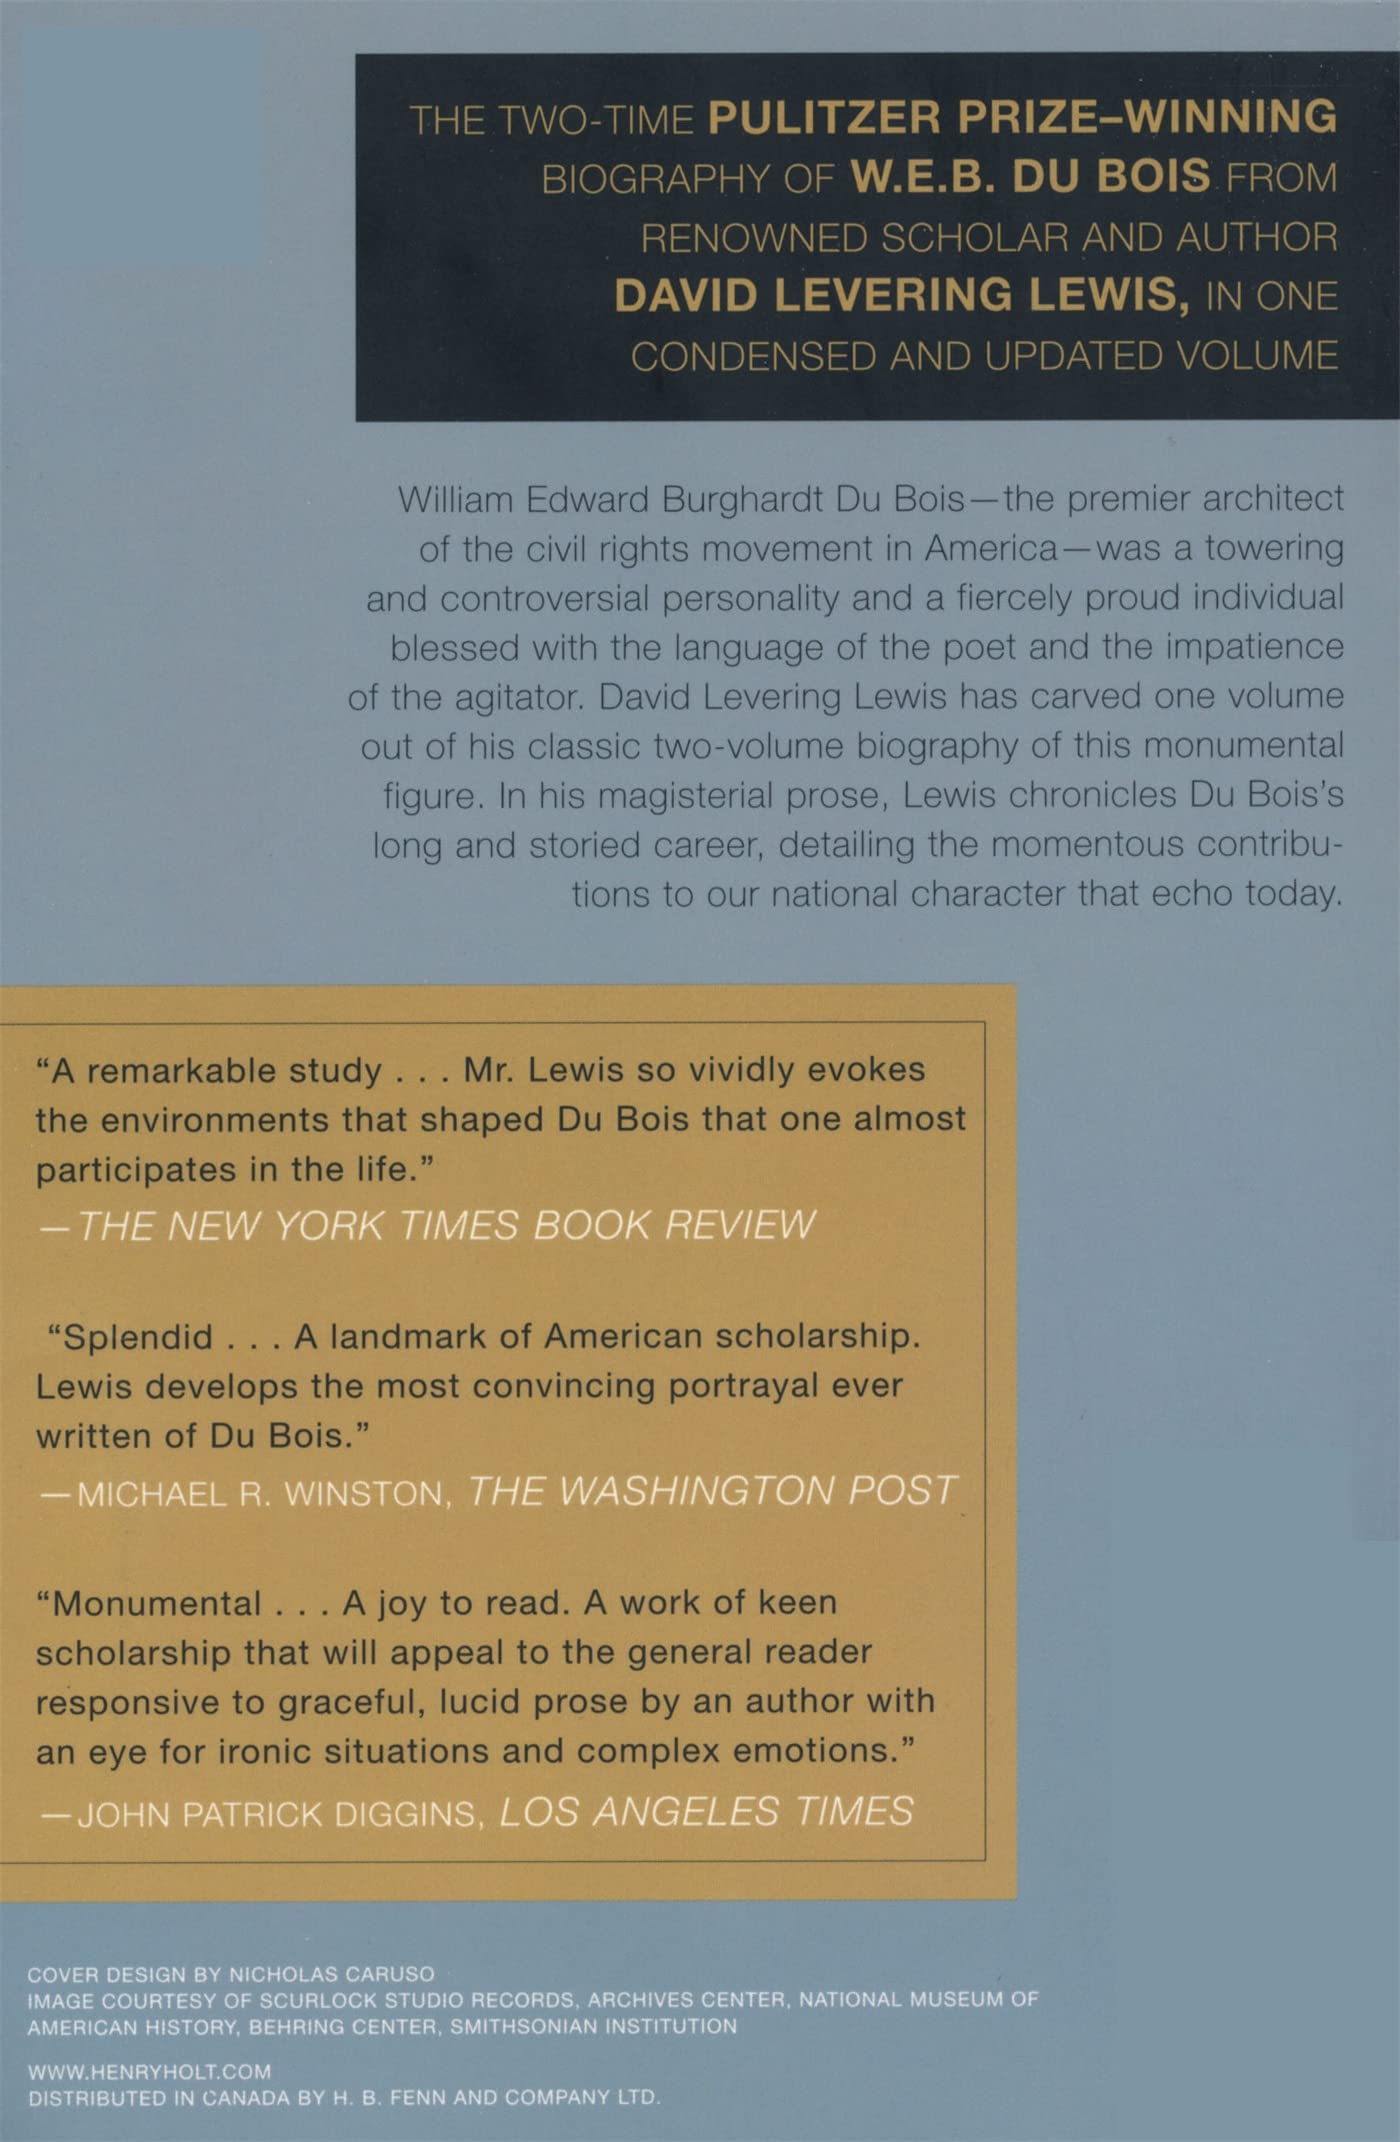 W.E.B. Du Bois: A Biography 1868-1963